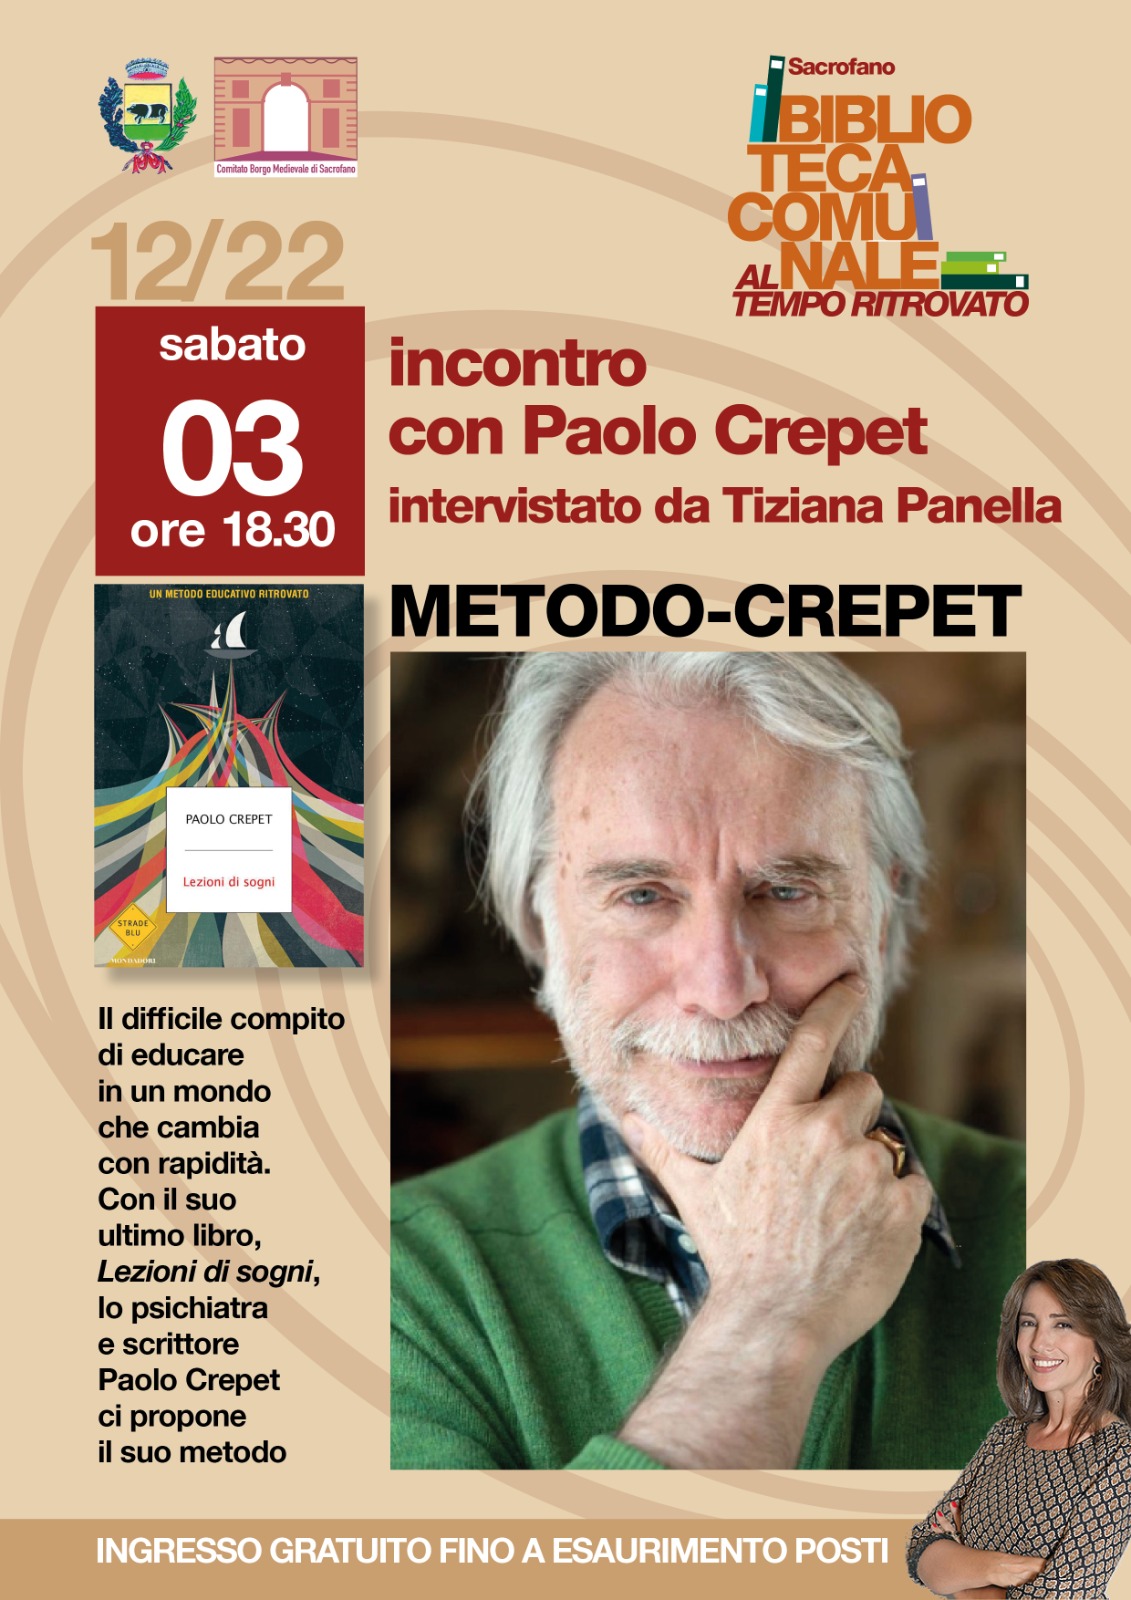 Incontro con Paolo Crepet, intervistato da Tiziana Panella Metodo - Crepet Biblioteca comunale di Sacrofano 3 dicembre 2022